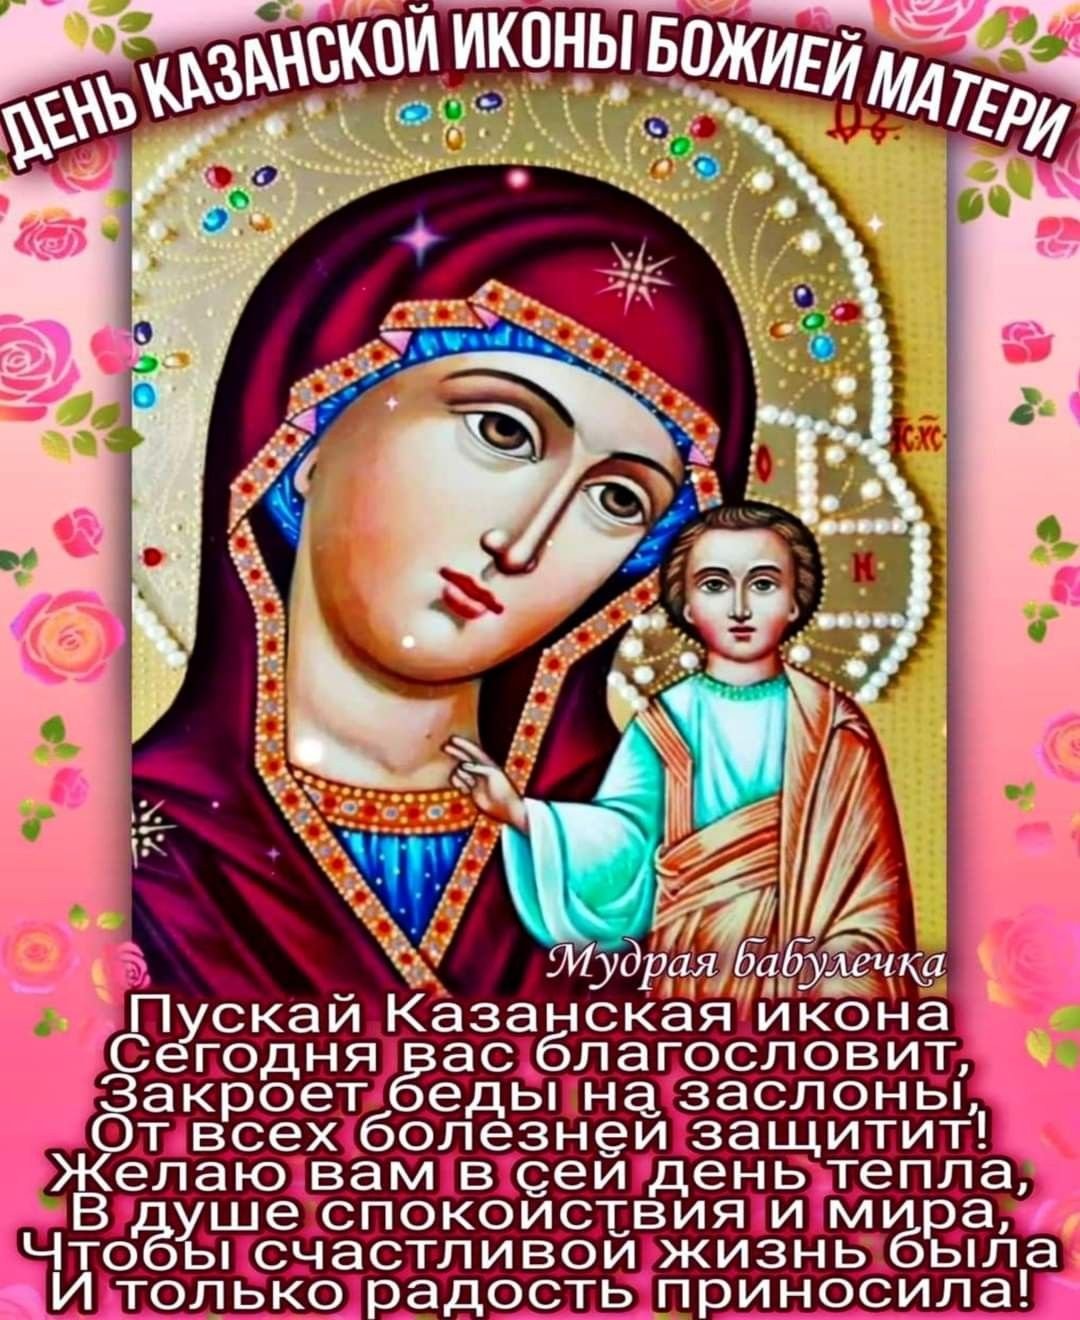 Скачать бесплатно картинку Казанской иконы Божией матери в высоком качестве.